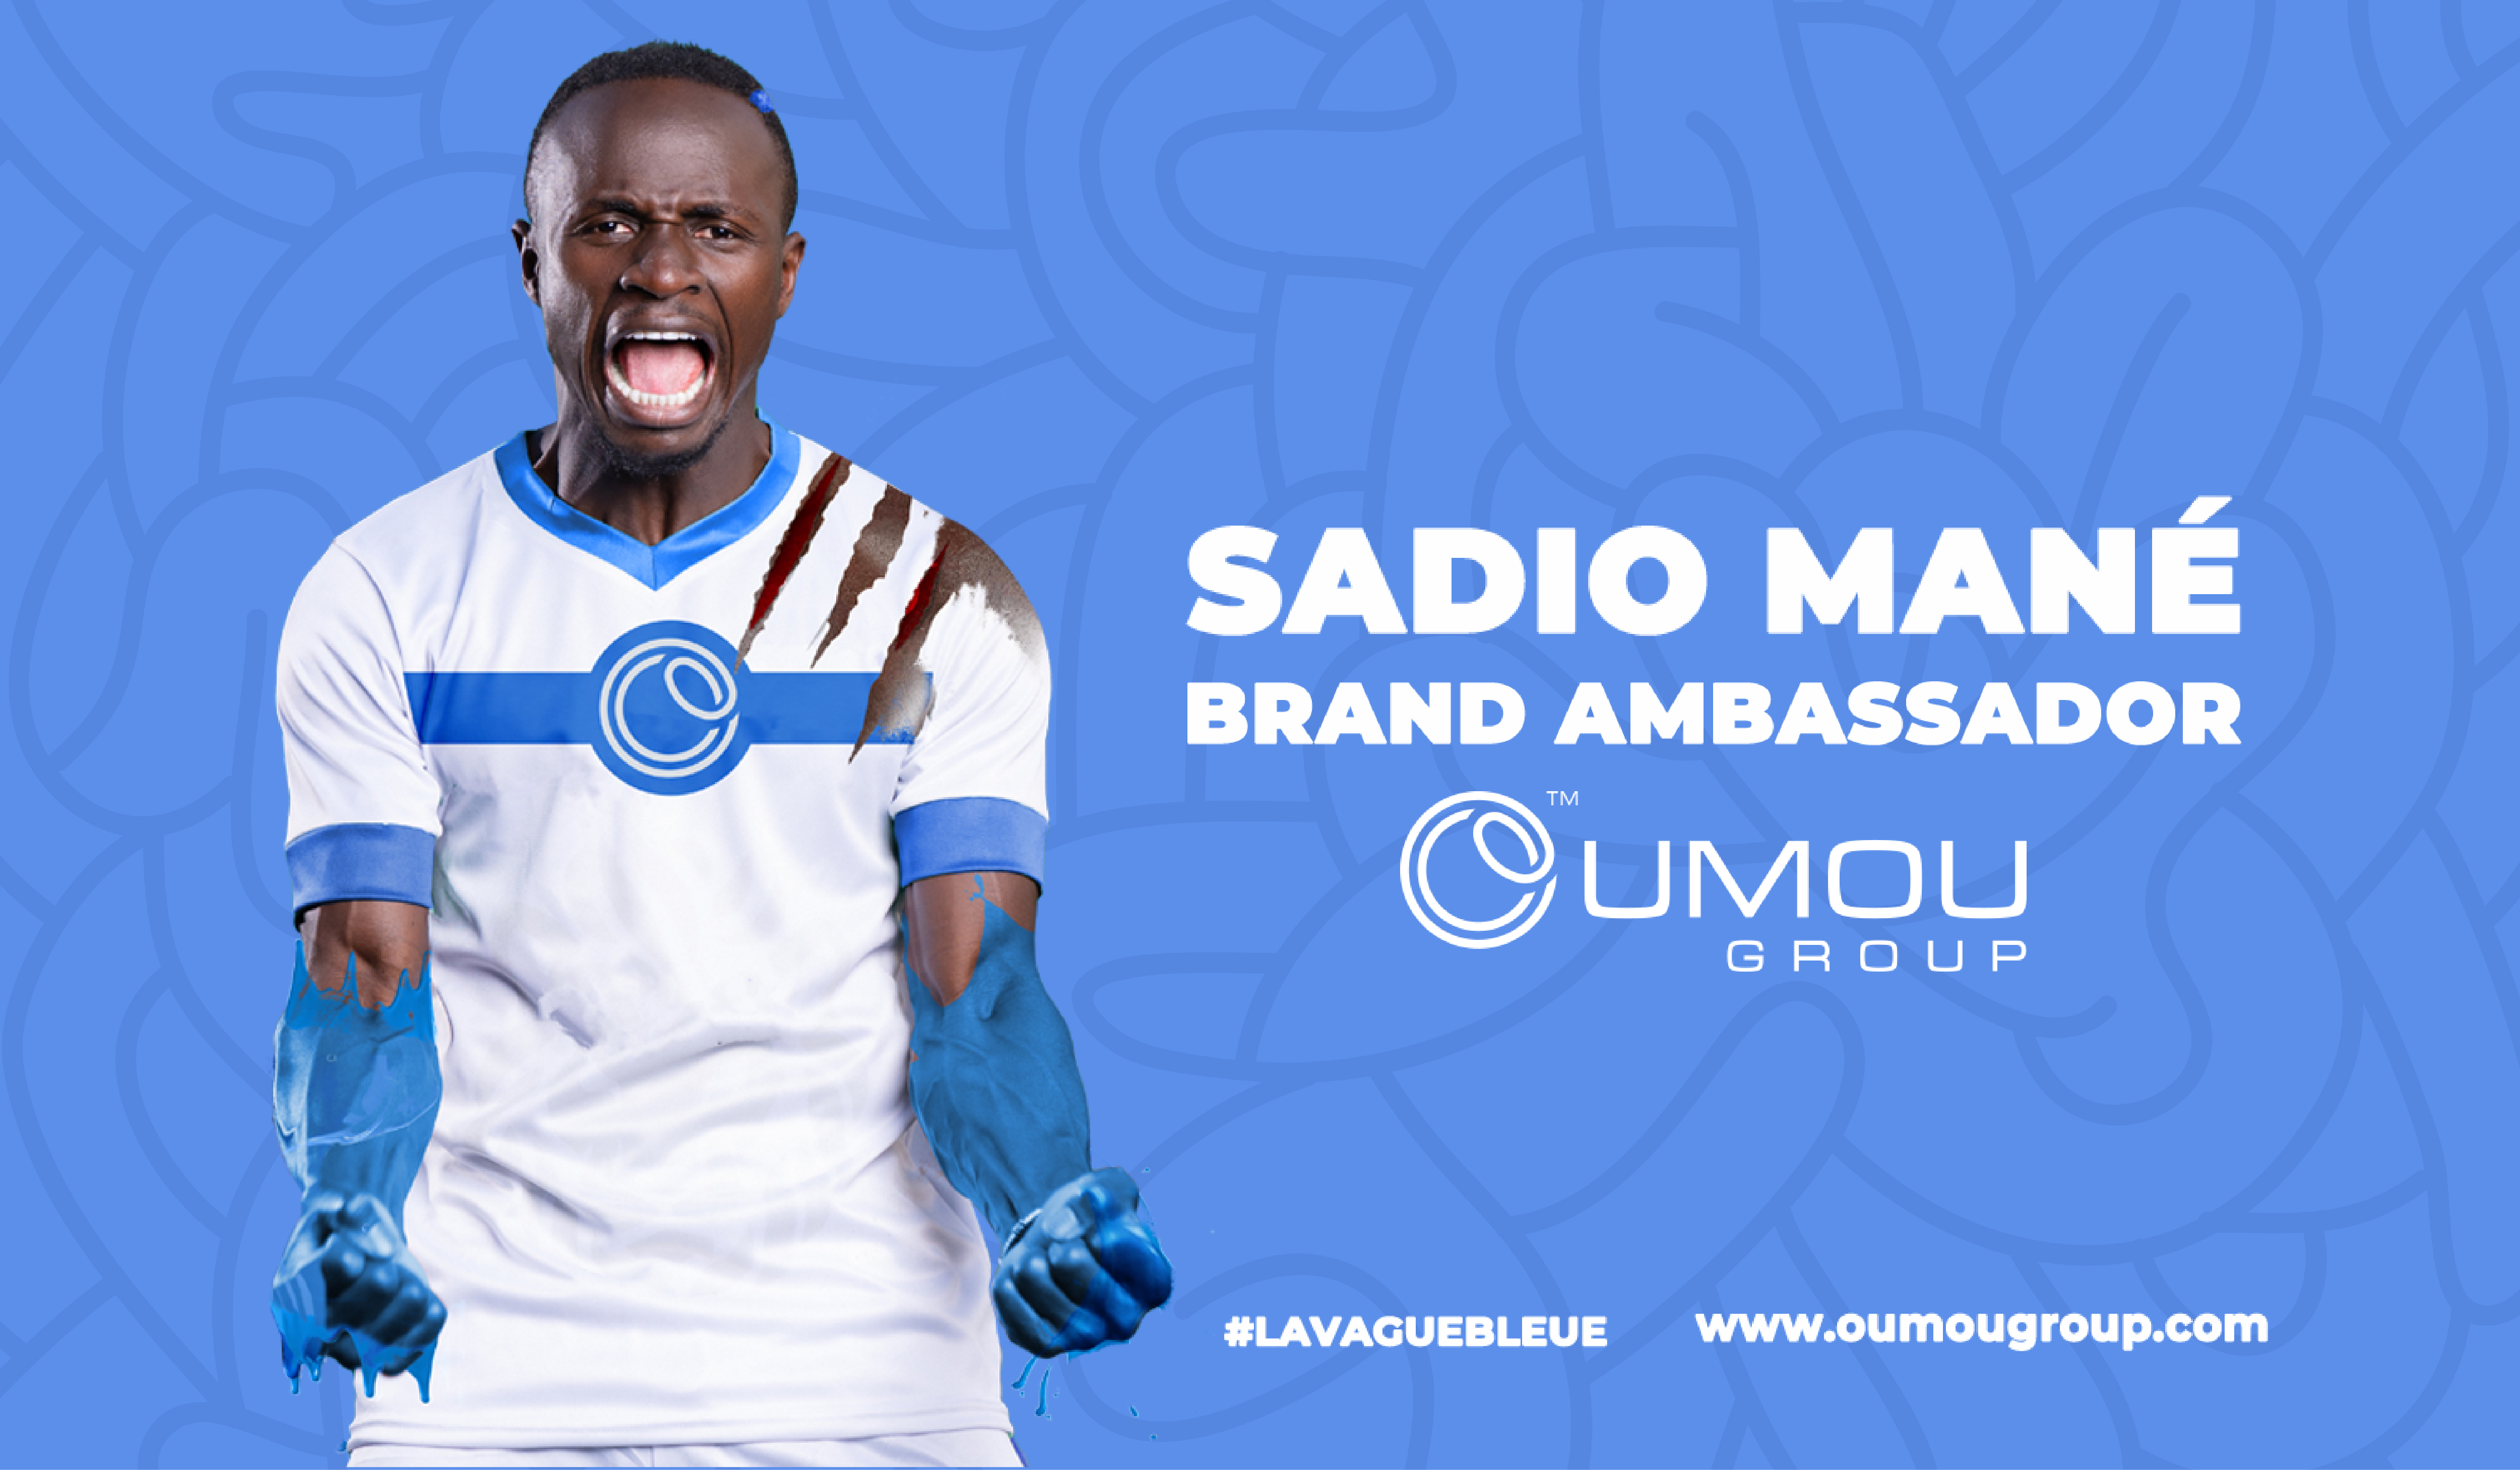 Communiqué de presse: Sadio Mané rejoint la Team Oumou Group